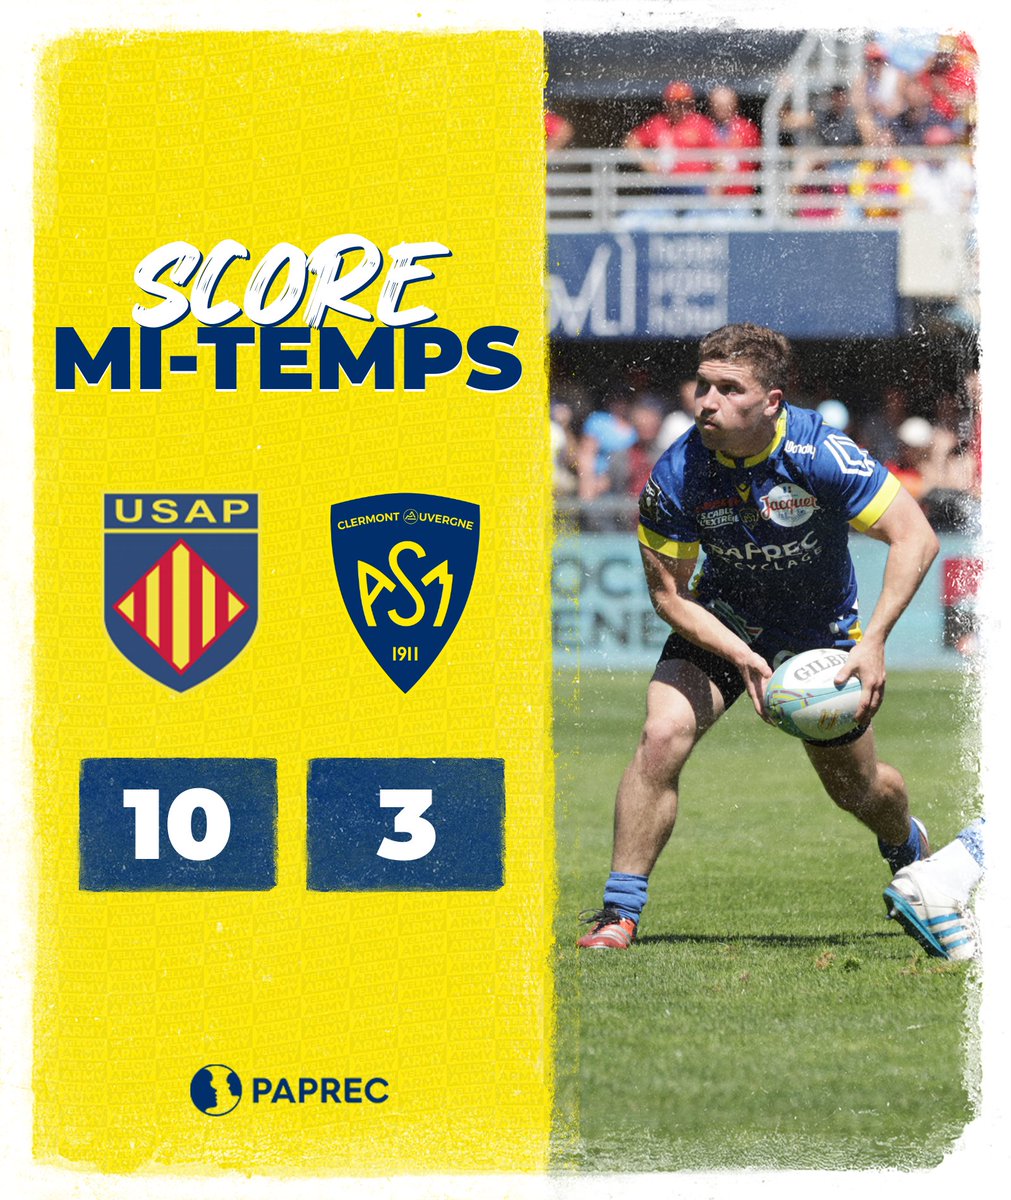 #USAPASM | Score Mi-Temps by @Paprec_Group Les Clermontois ont contenu la domination catalane en première période et tournent avec 7 points de retard, Tout reste à faire 👀